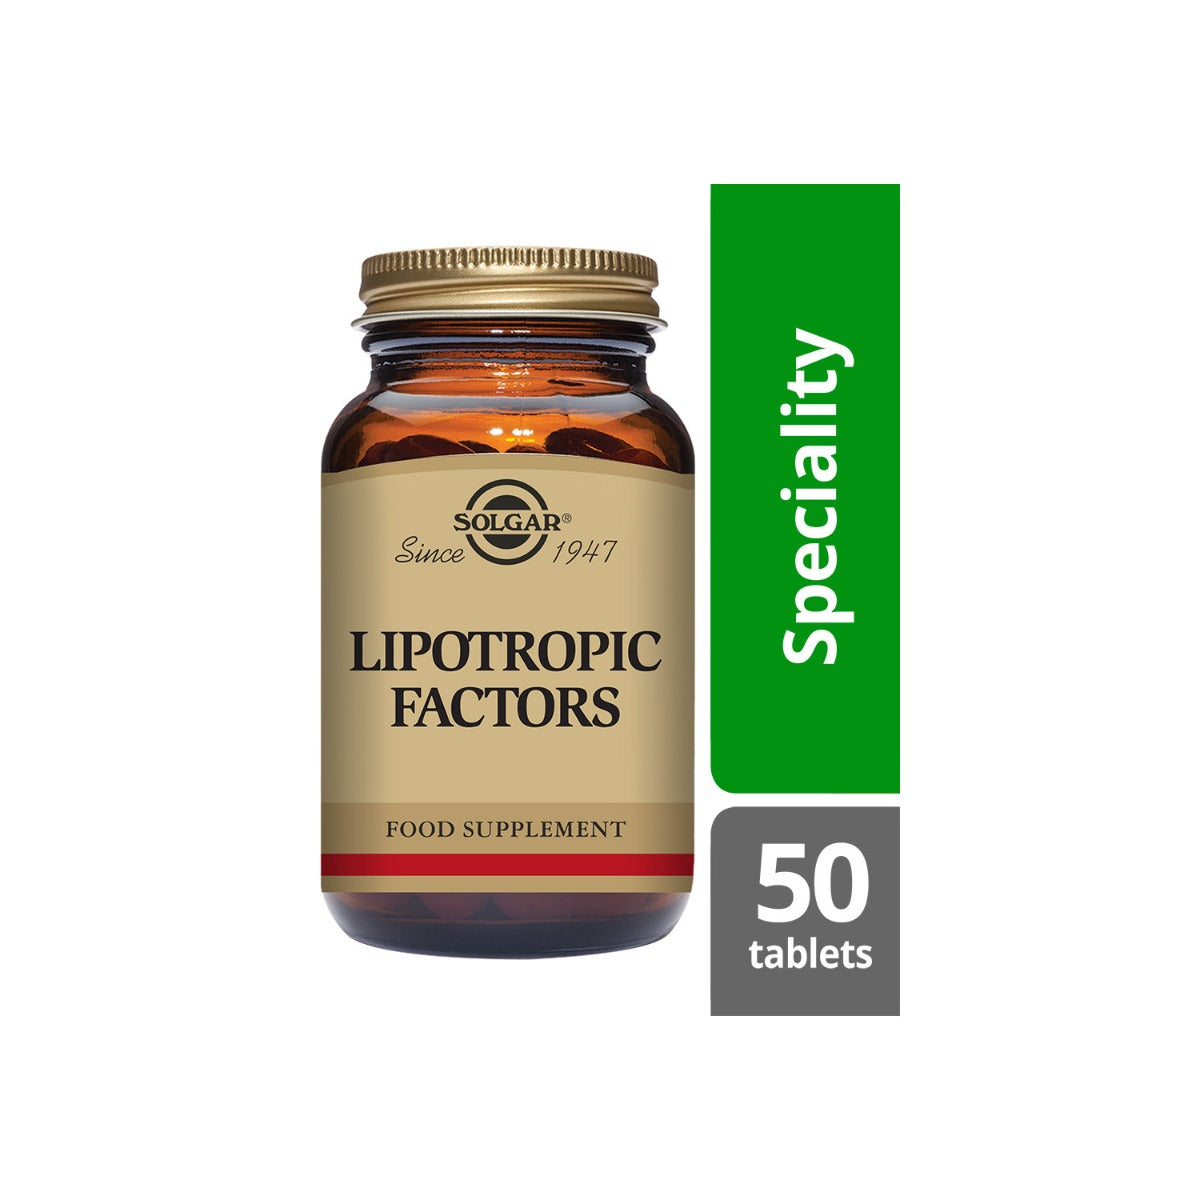 Solgar® Lipotropic Factors Tablets - Pack of 50